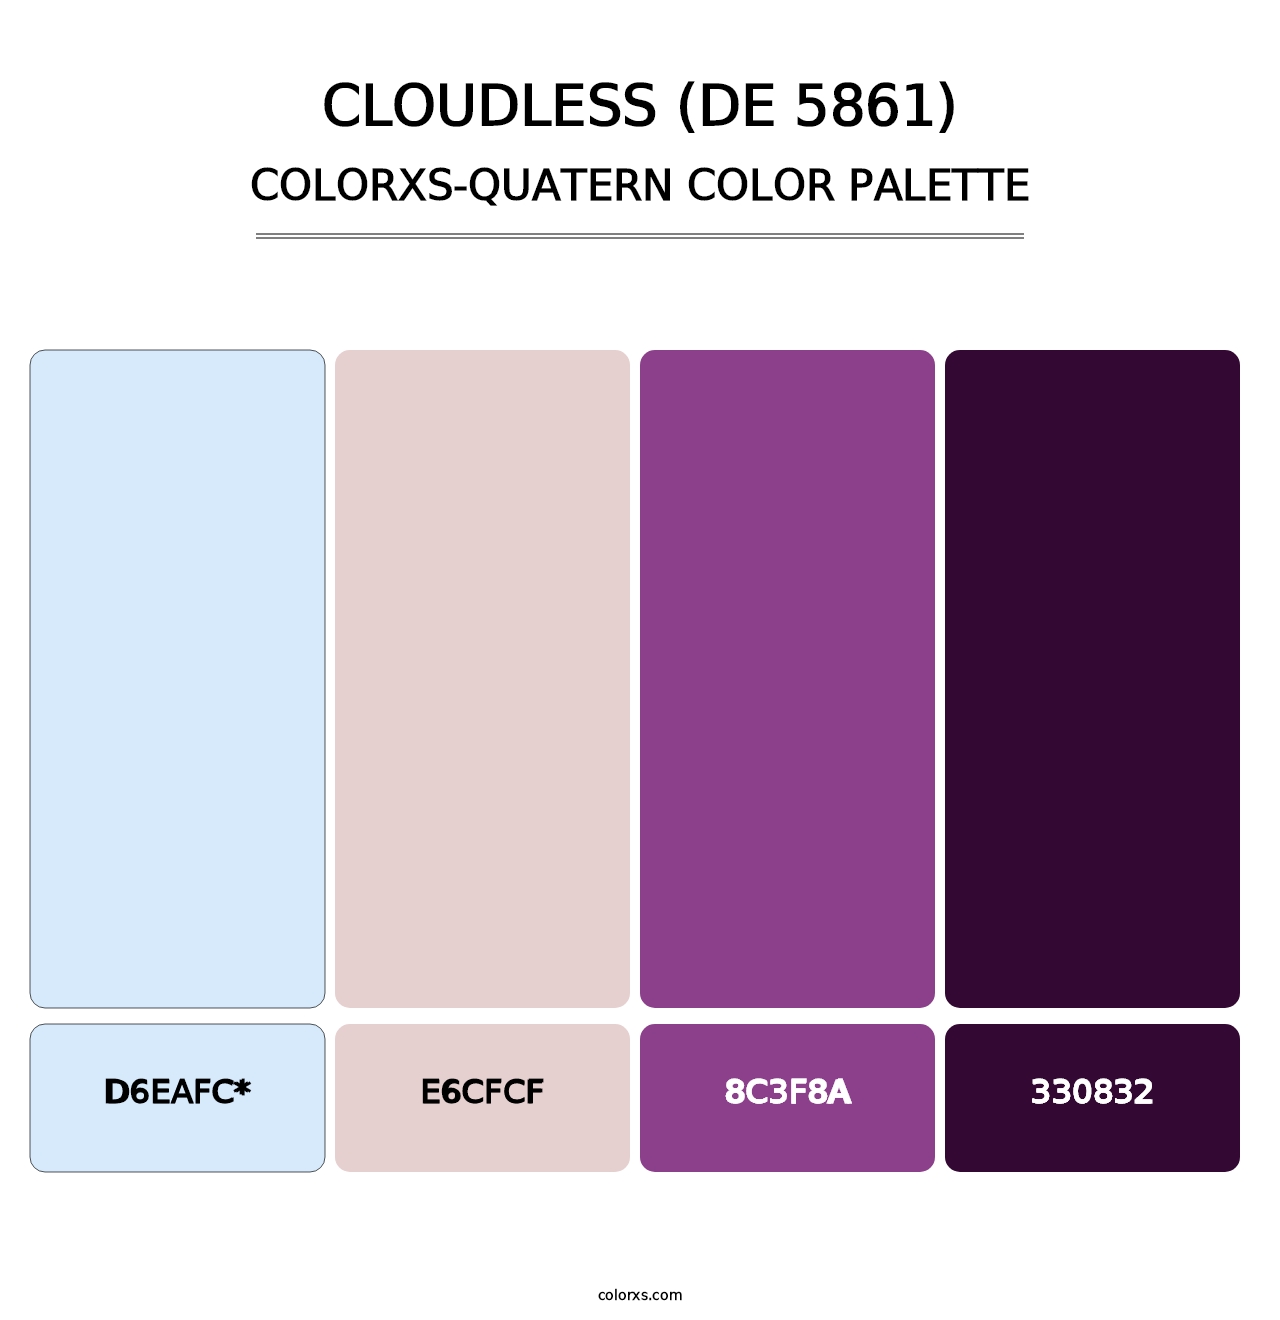 Cloudless (DE 5861) - Colorxs Quatern Palette